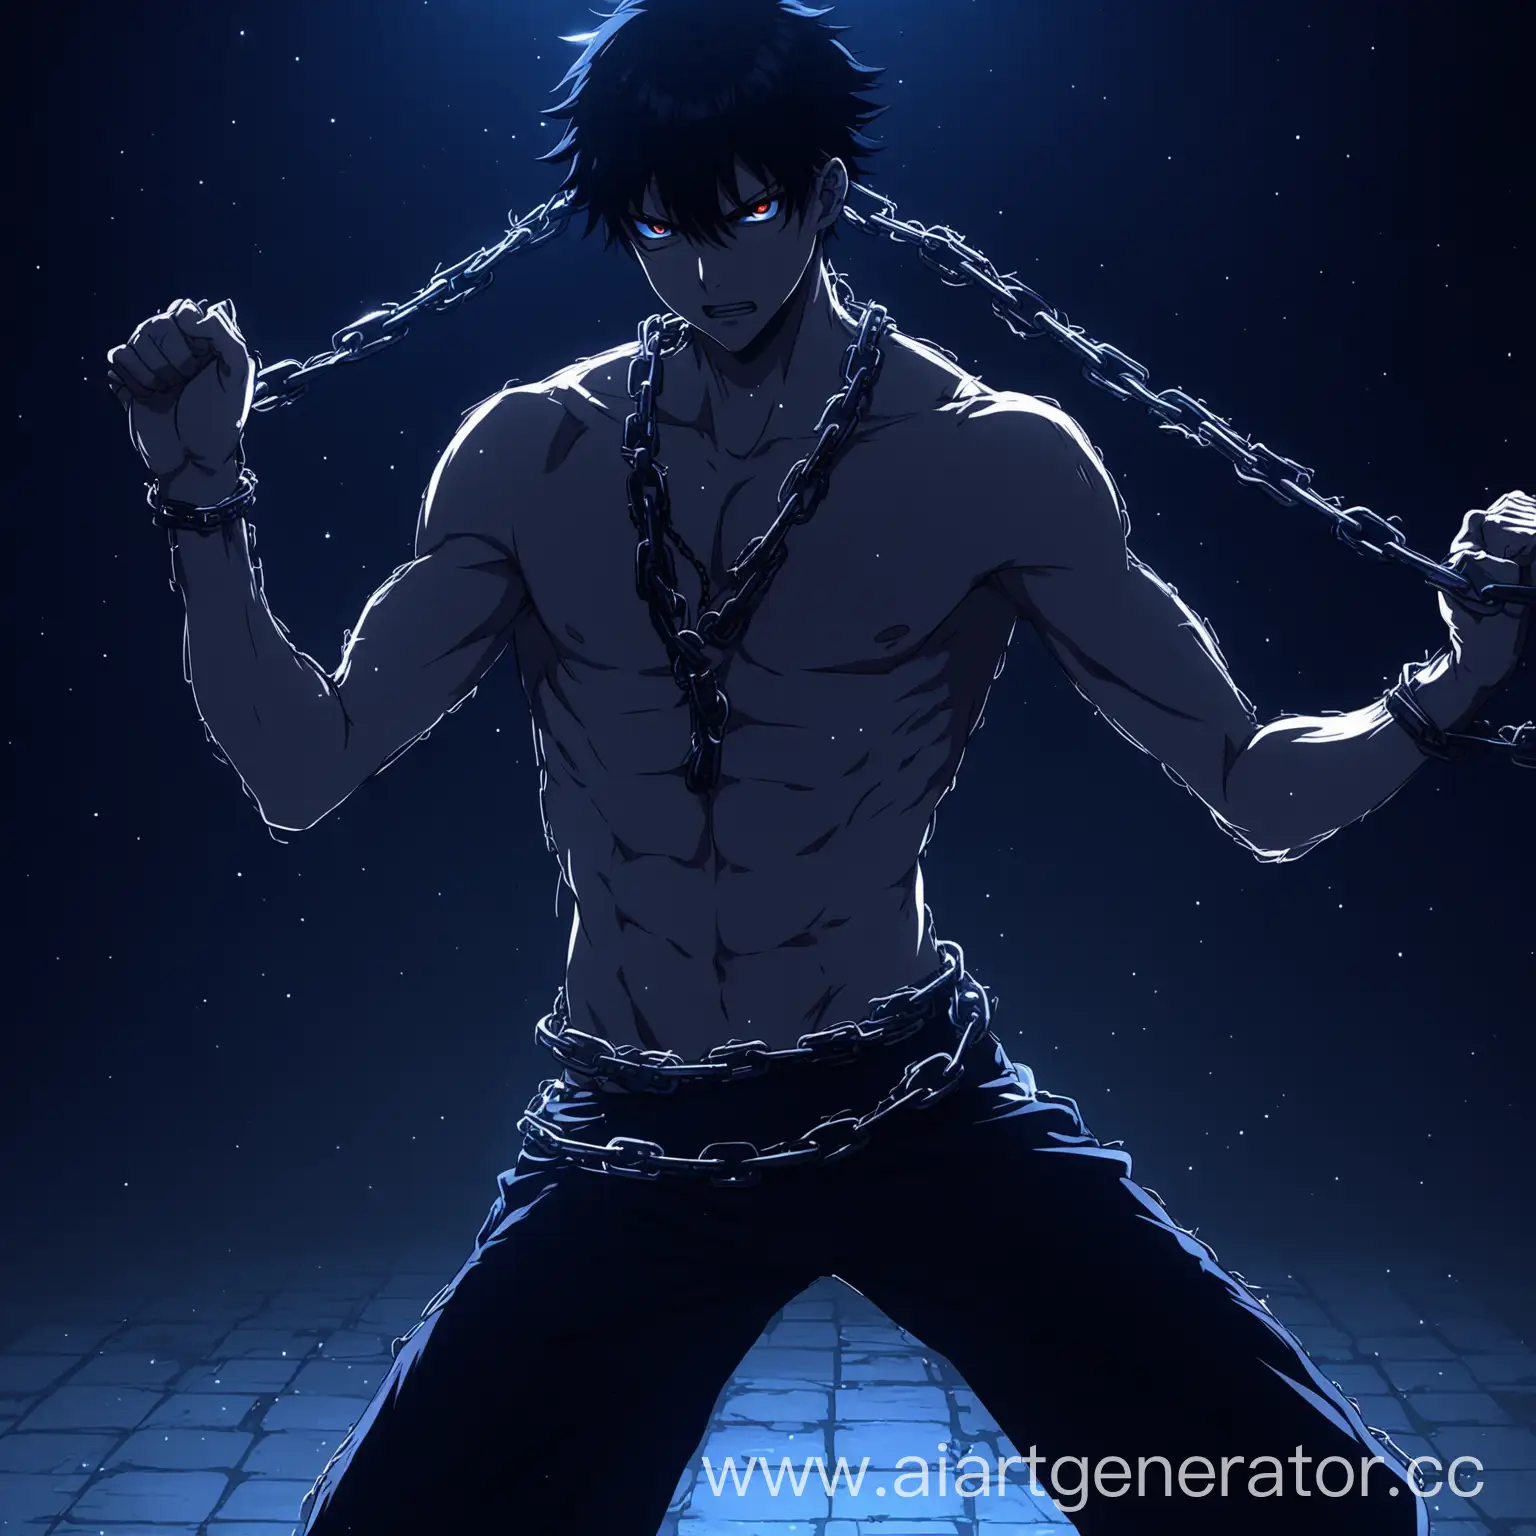 энергично танцующий аниме персонаж мужского пола  ночью в цепях 